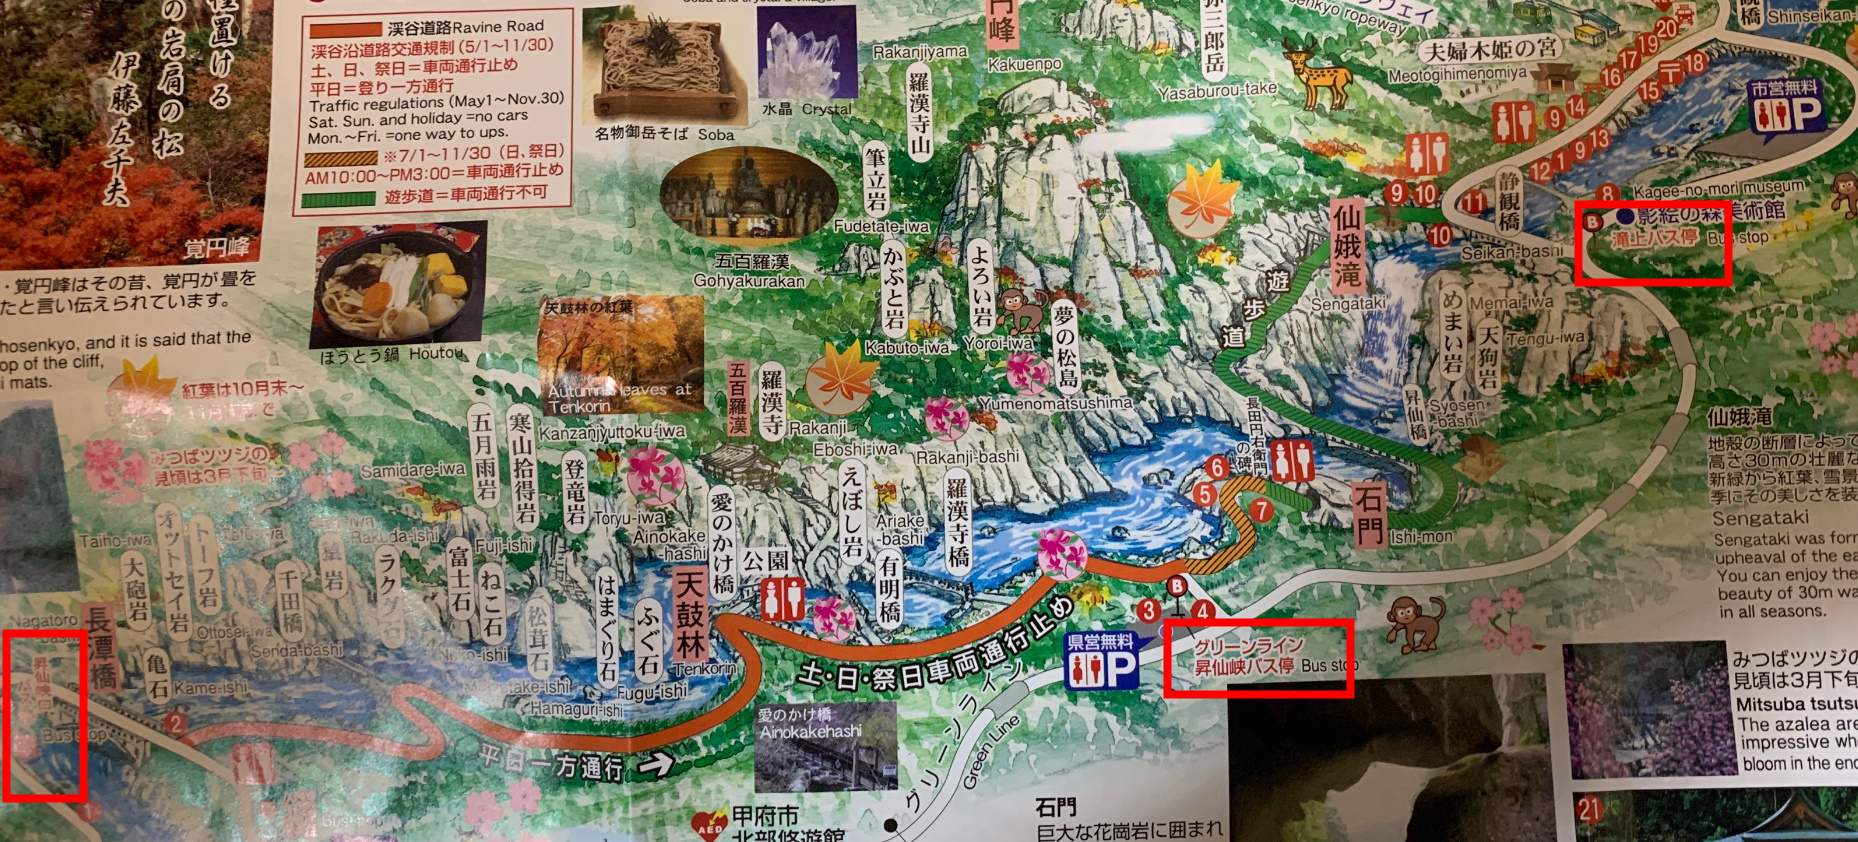 昇仙峡地図